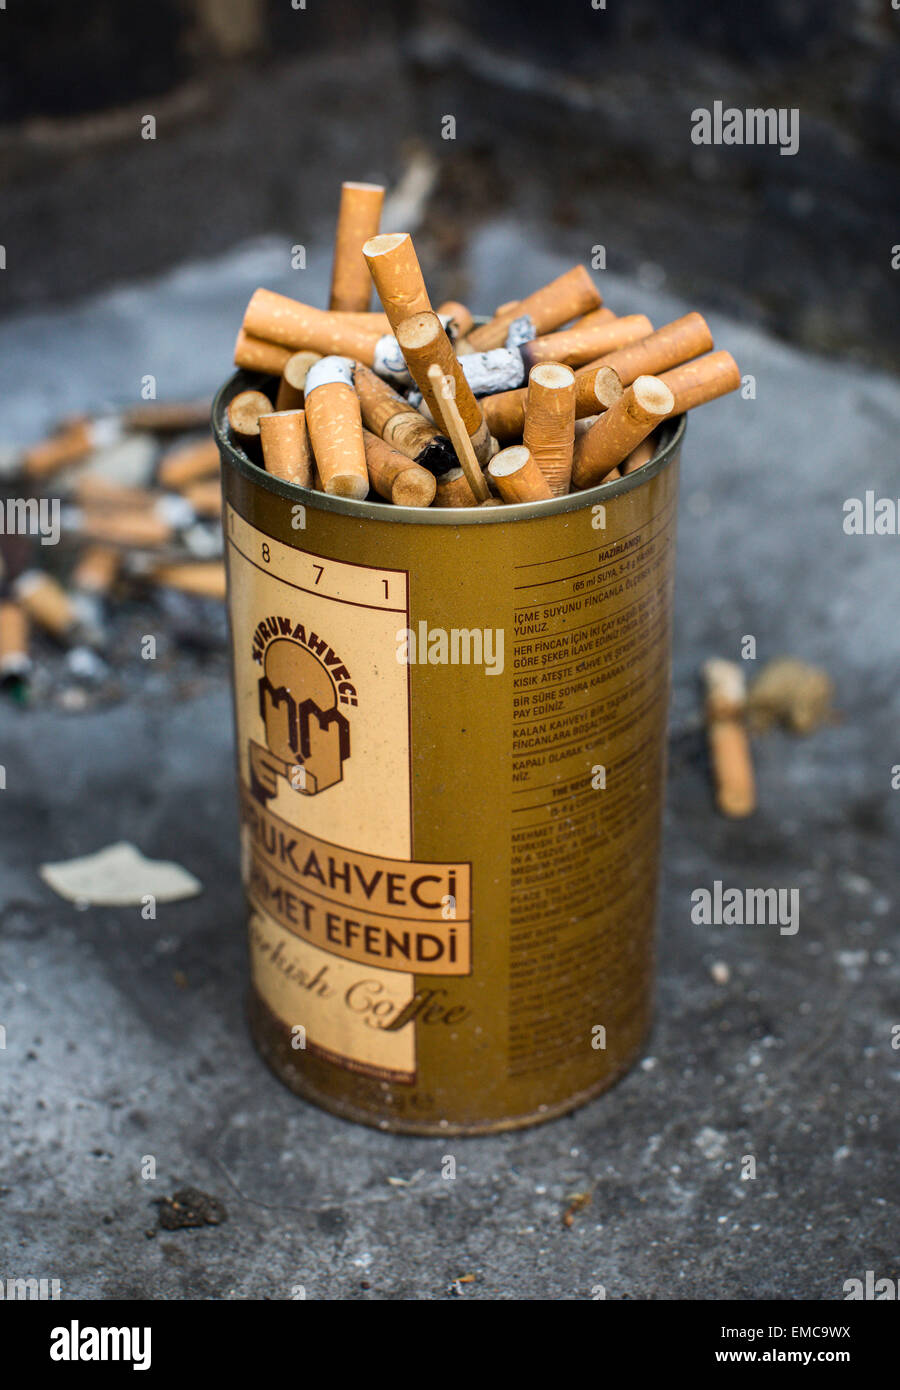 Ein alten türkischen Kaffee Behälter vollgestopft mit gebrauchten Zigarettenstummel. Stockfoto